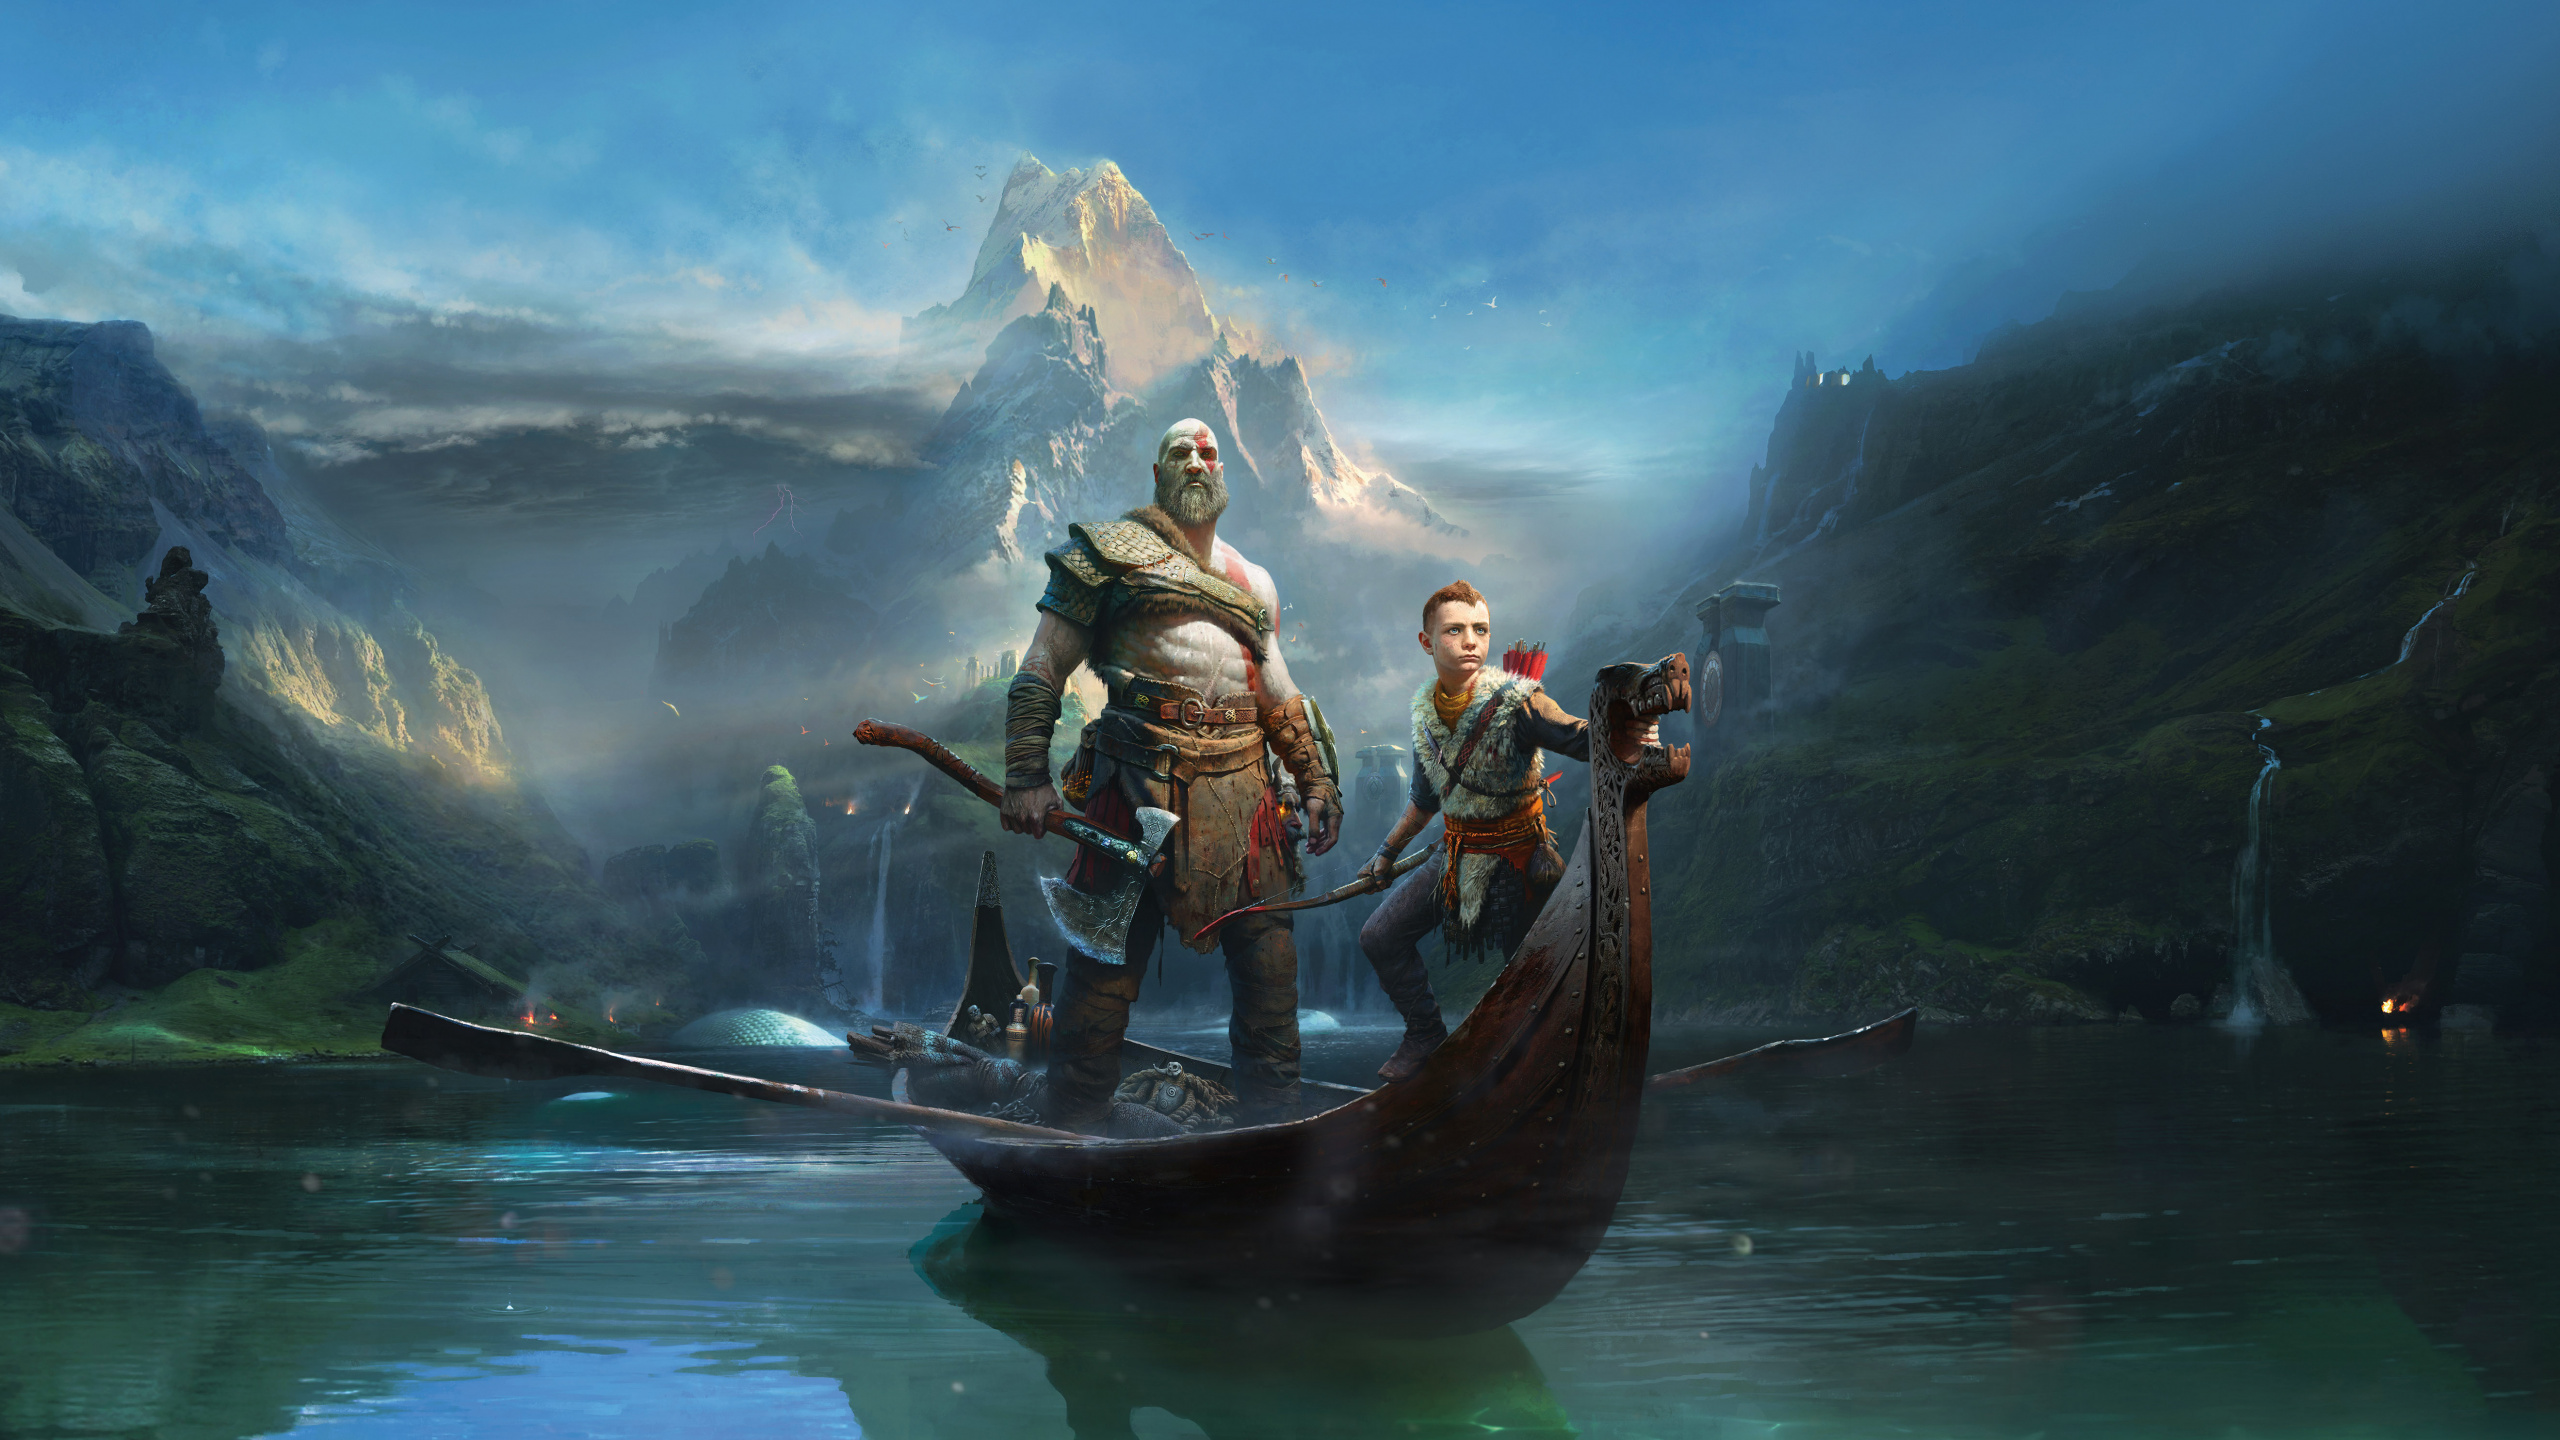 Gott Des Krieges, Kratos, Playstation 4, Adventure, Pc-Spiel. Wallpaper in 2560x1440 Resolution